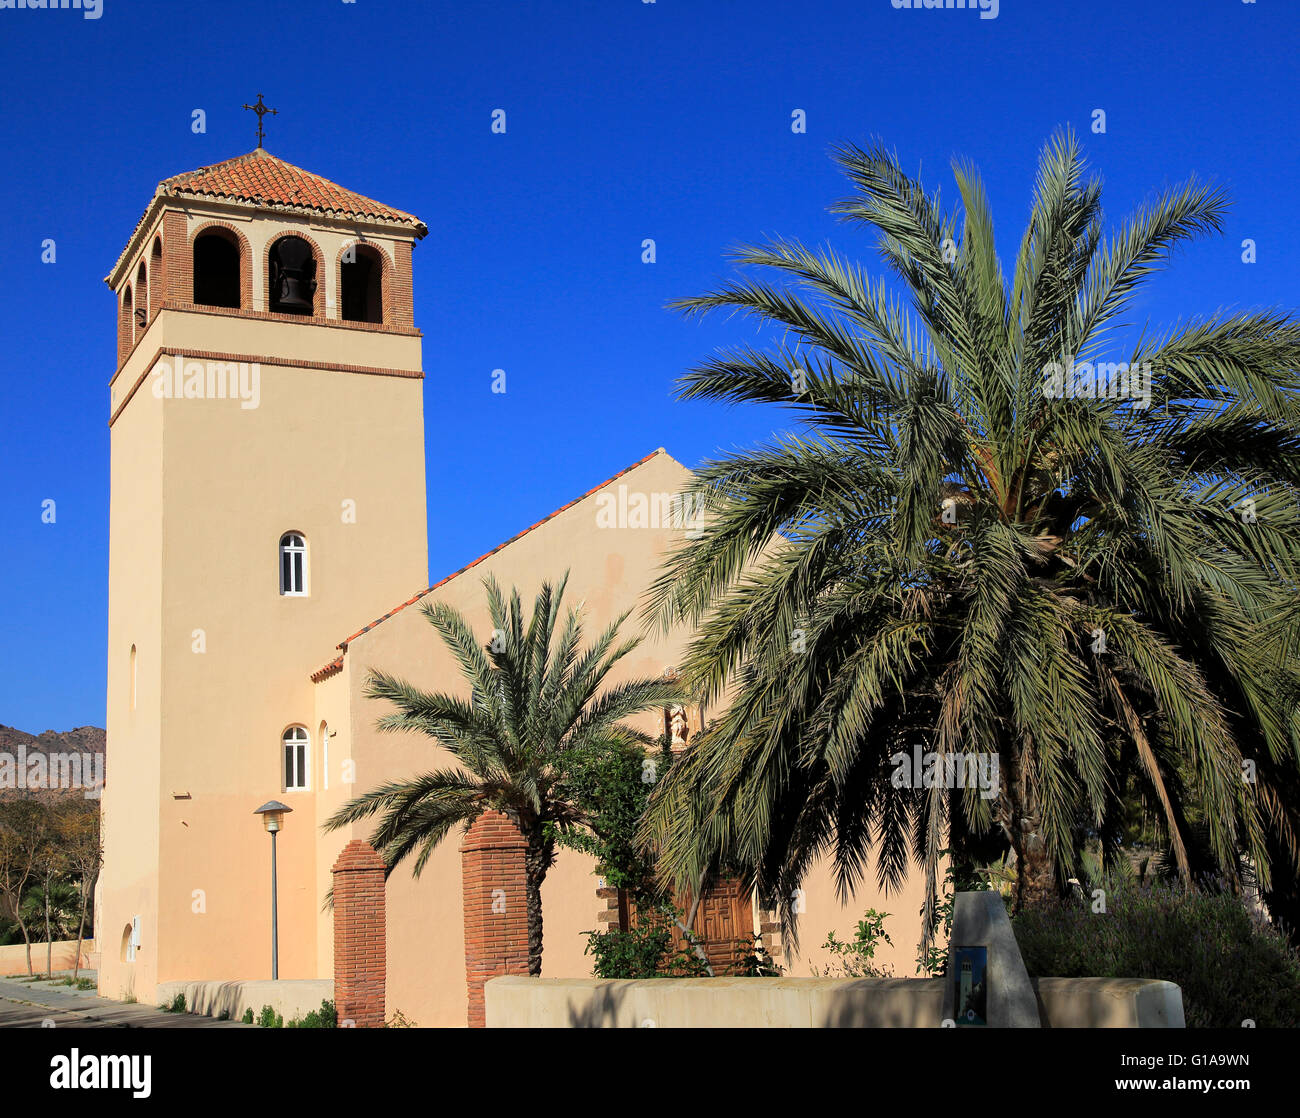 Church at Rodalquilar, Cabo de Gata natural park, Almeria, Spain Stock Photo